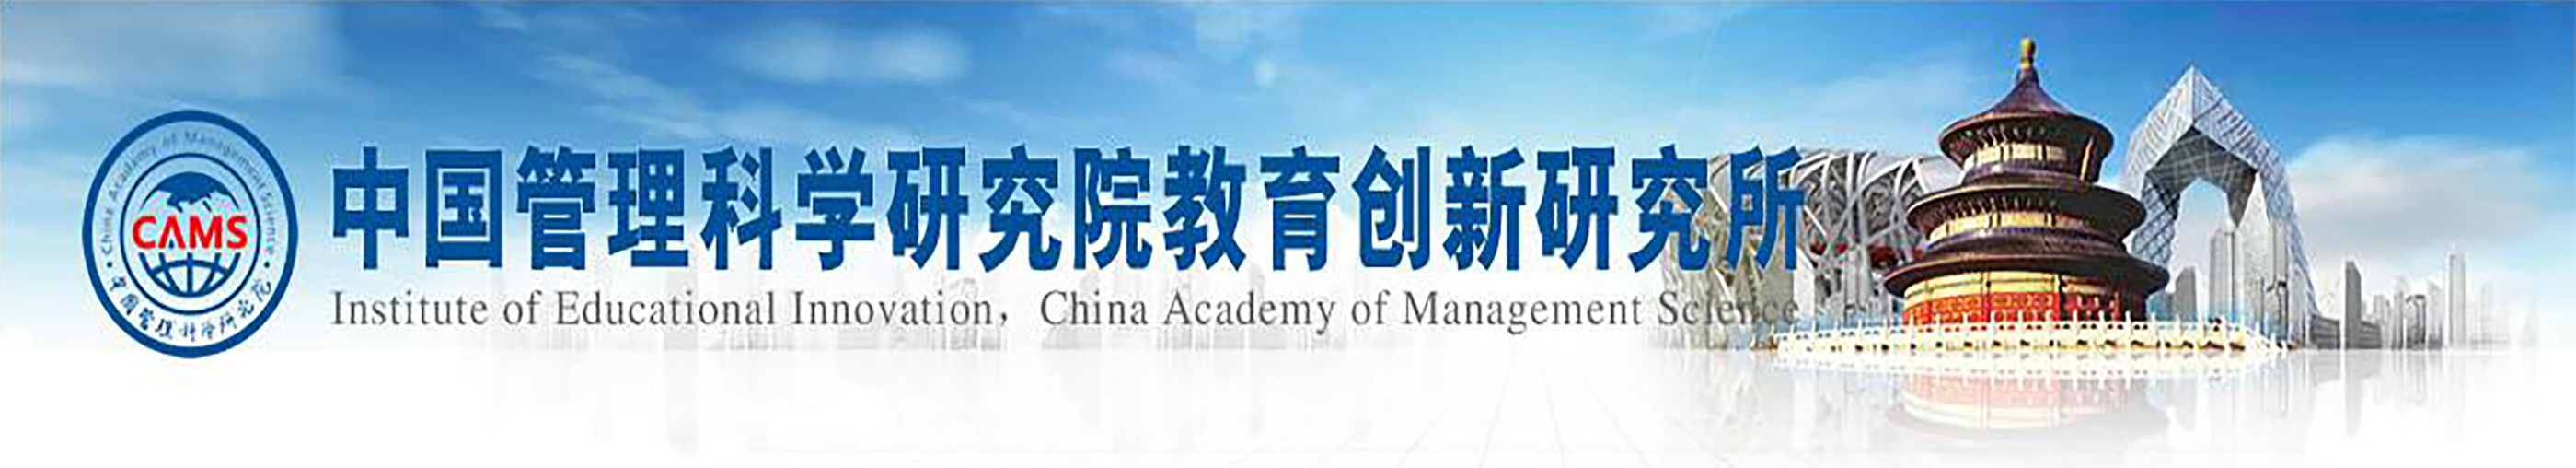 中国管理科学研究院教育创新研究所